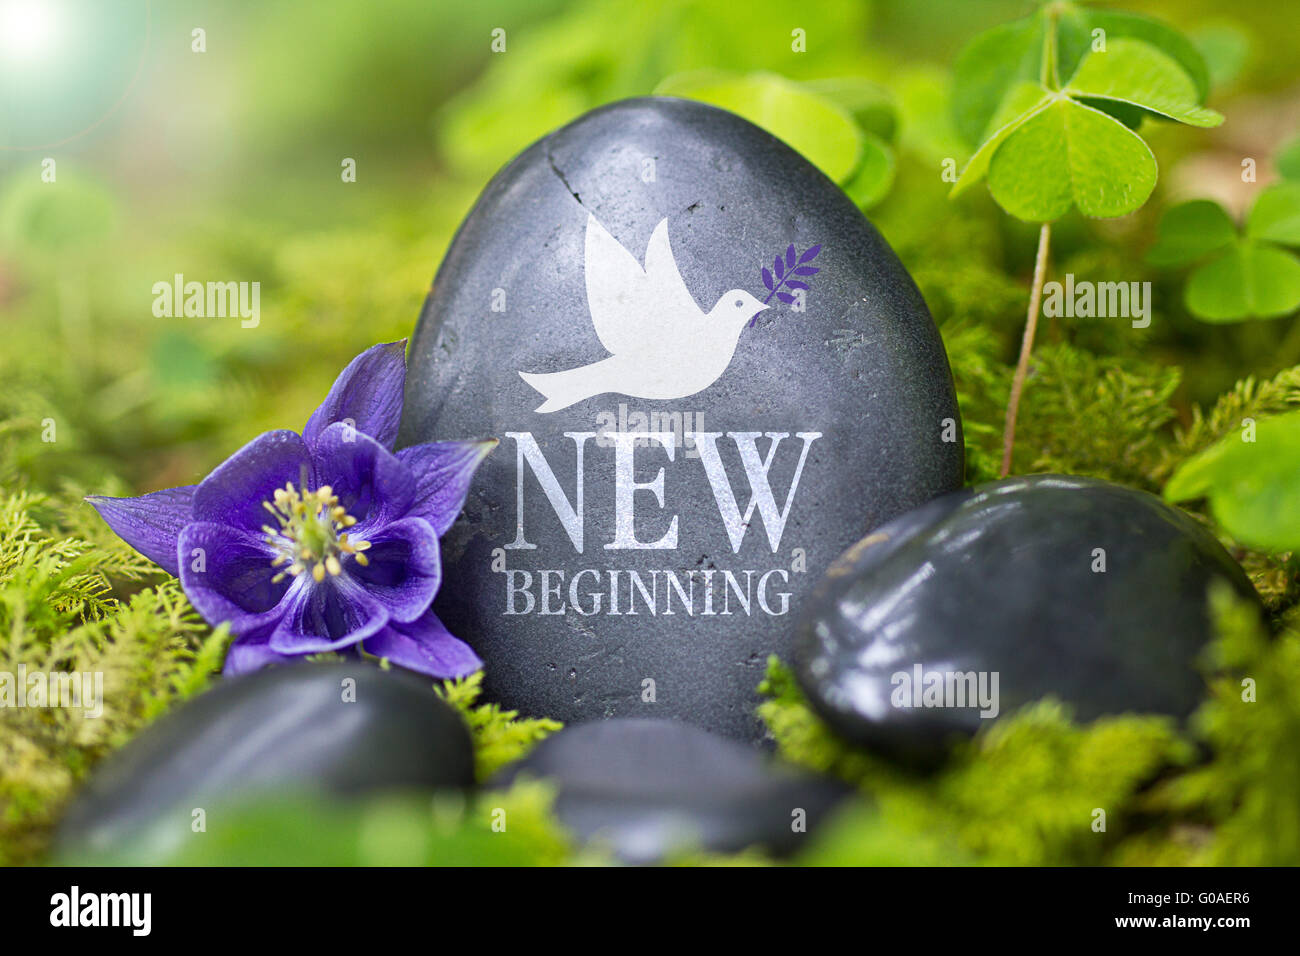 Schwarzer Stein mit den Worten "New Beginning" Stockfoto